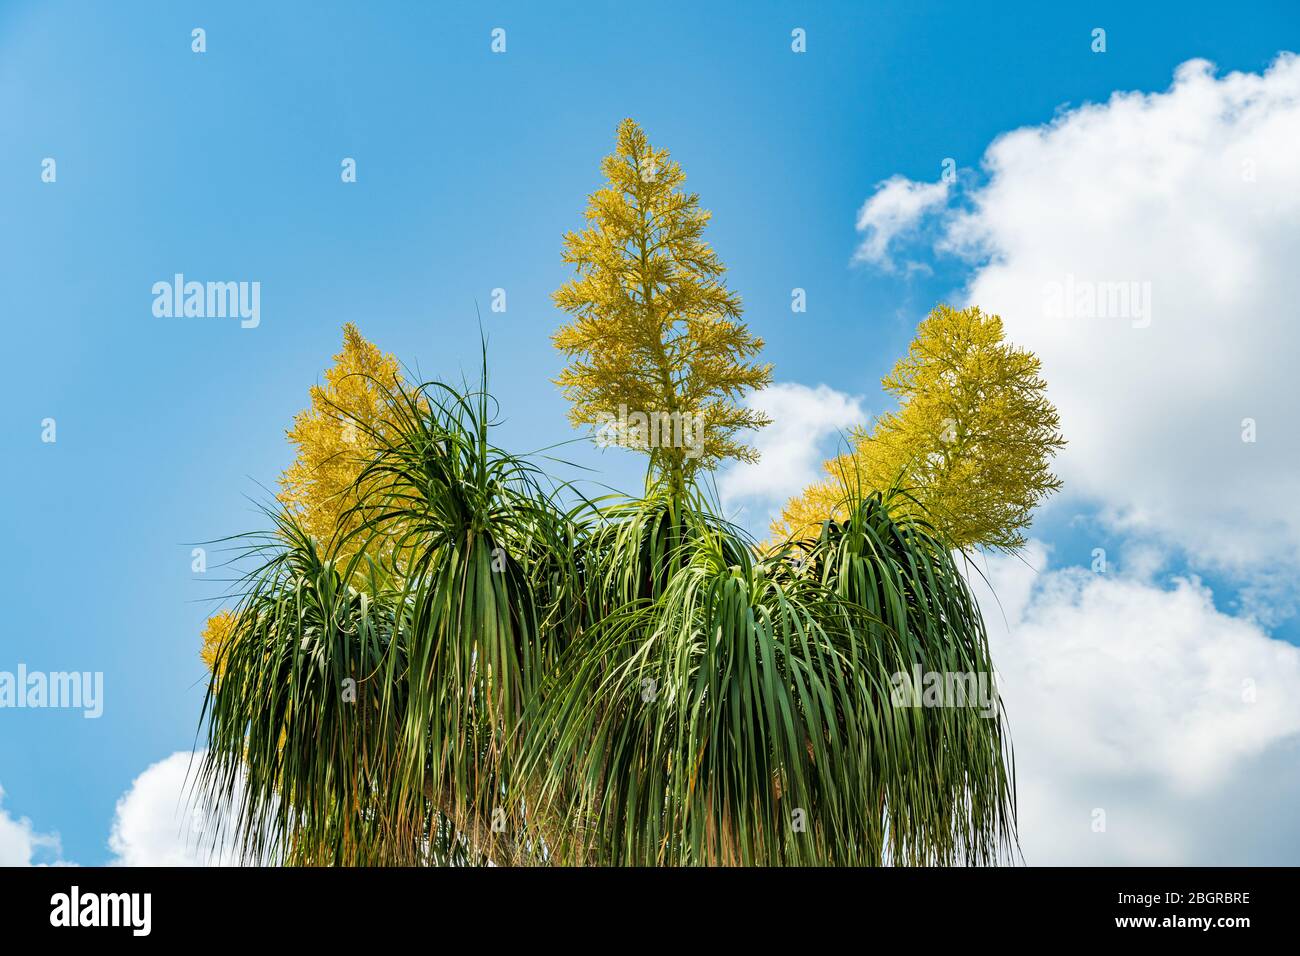 Palmier à queue de cheval alias pied d'éléphant (Beaucarnea recurvata) avec fleurs jaunes - Pembroke Pines, Floride, États-Unis Banque D'Images